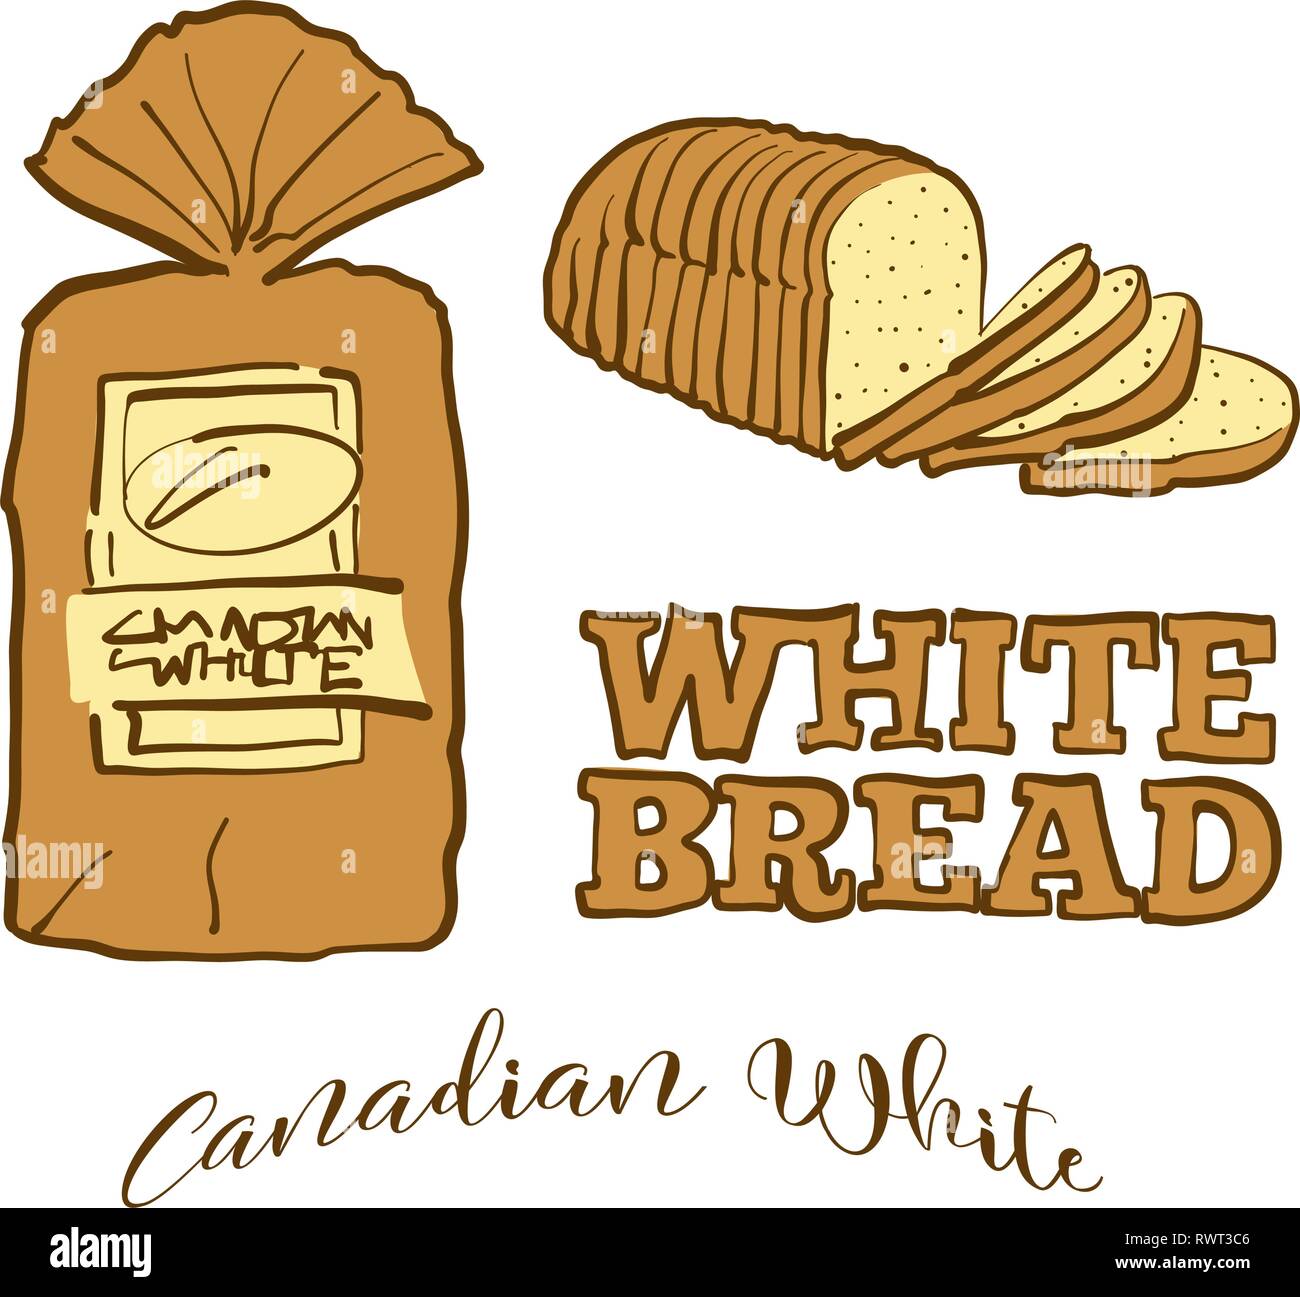 Farbige Skizzen der Kanadischen Weißbrot. Vektor Zeichnung des Weißen Essen, in der Regel in Kanada bekannt. Farbige Brot Abbildung Serie. Stock Vektor